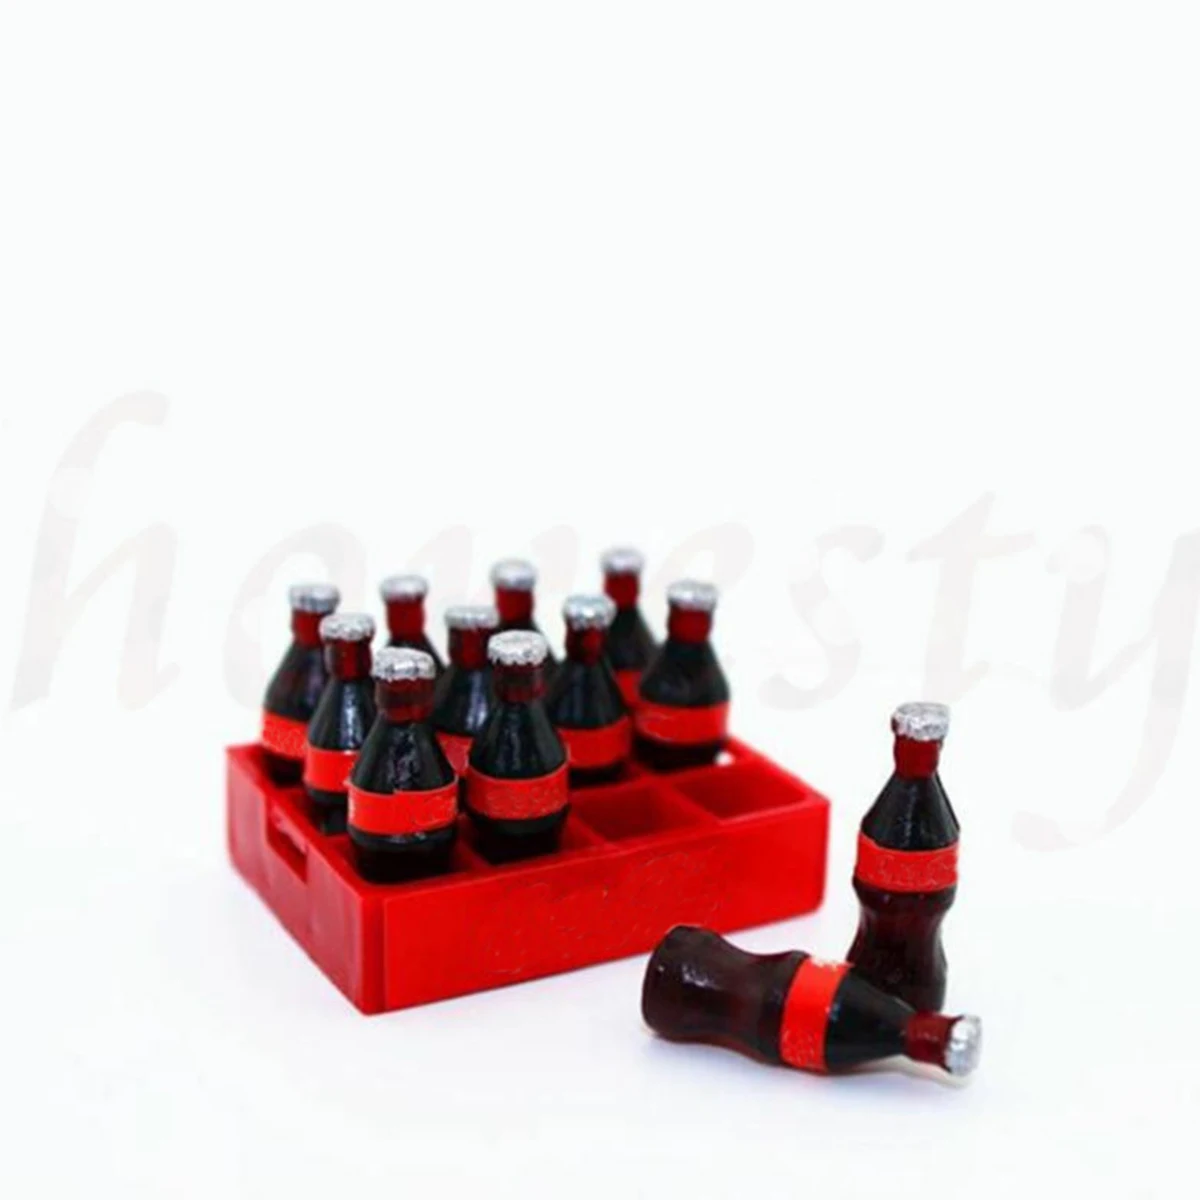 12 un./set Mini Casa De Muñecas En Miniatura Coca Cola con 1 modelo básico de cola Decoración 